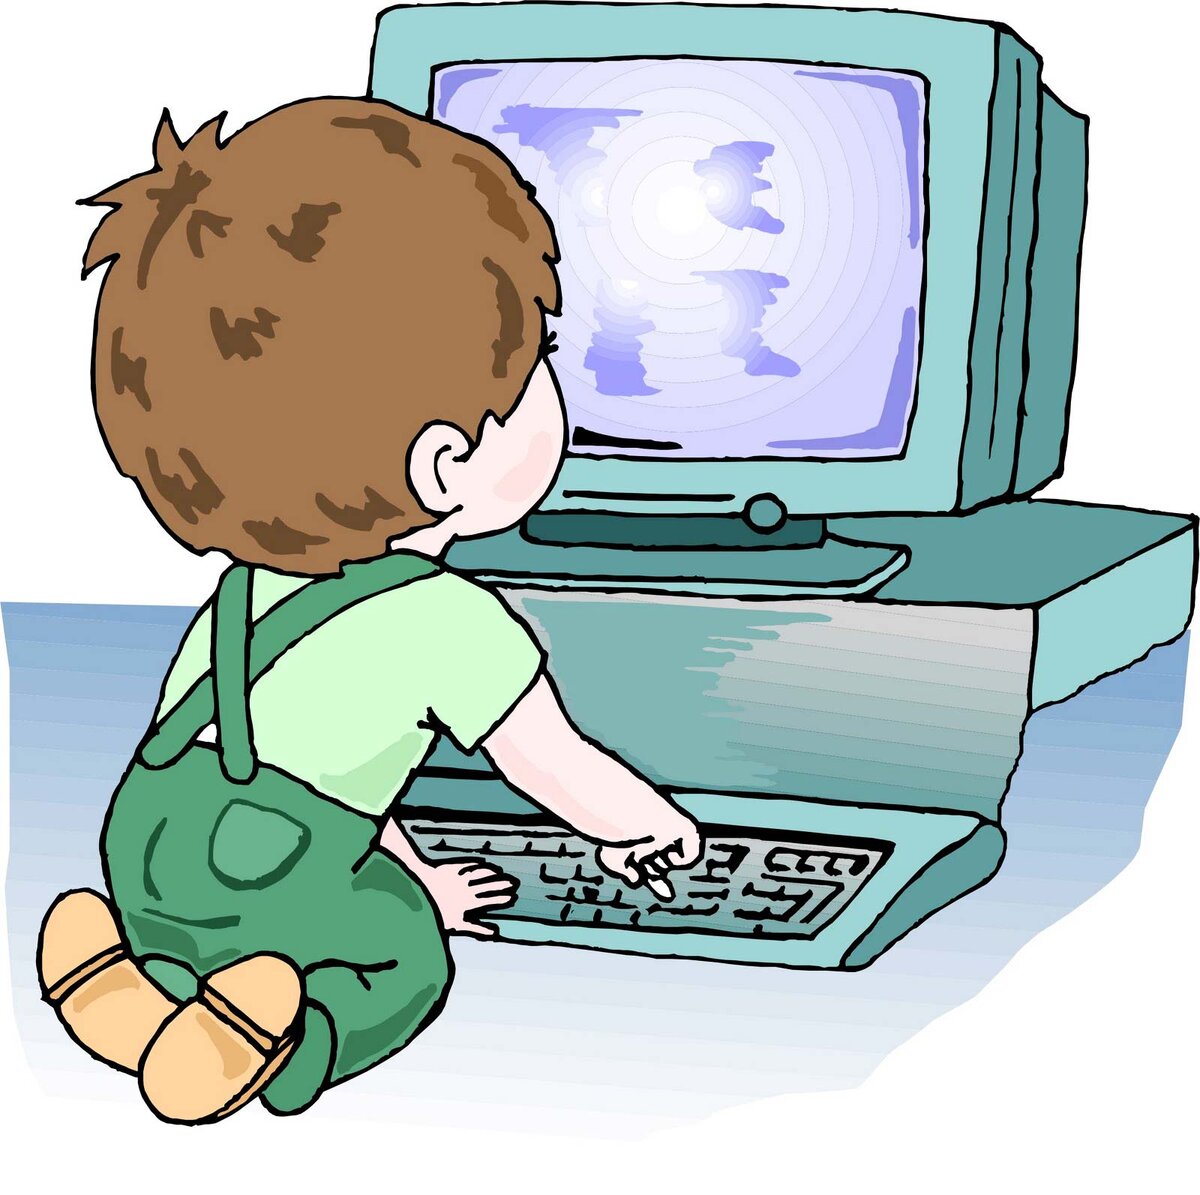 Безопасность компьютера для детей